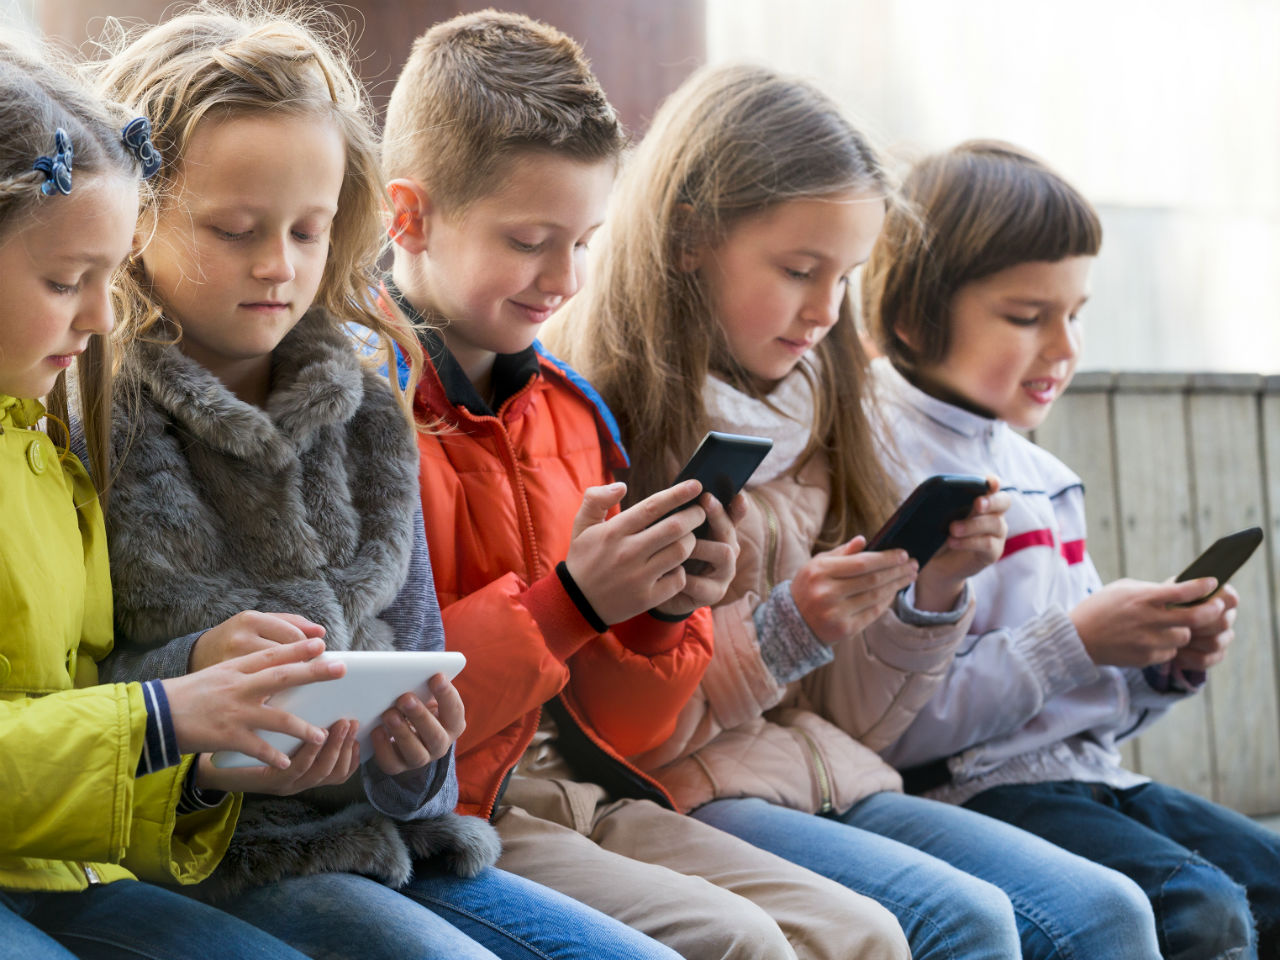 РФ вербувала українських дітей через ігри на смартфоні. Що відбувається?